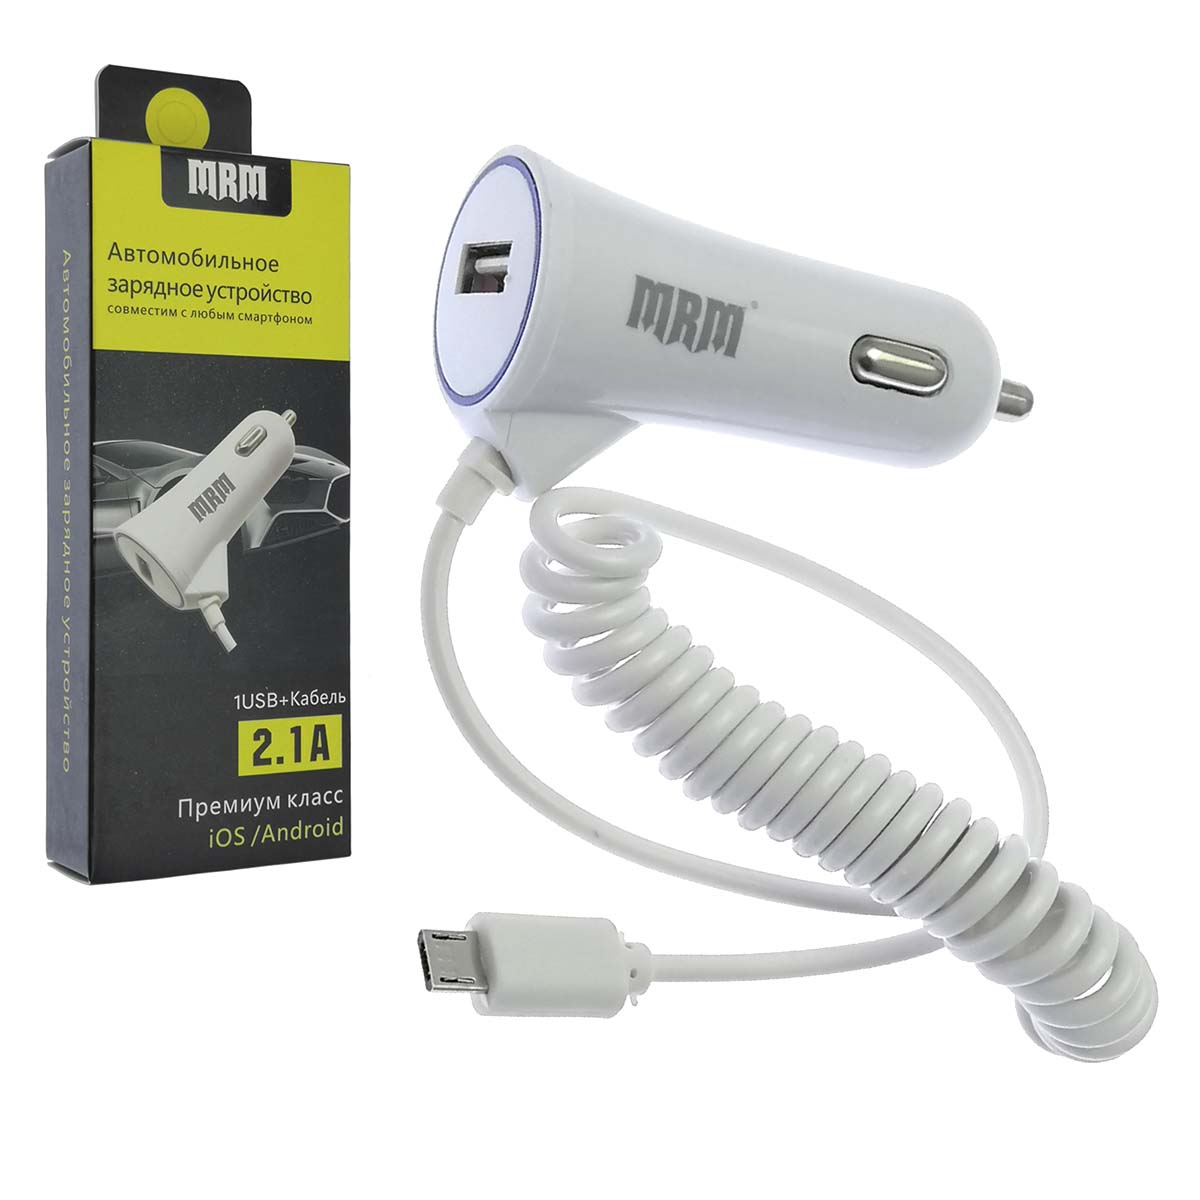 АЗУ (автомобильное зарядное устройство) MRM MR-87, 5V-1A, порт USB, с витым кабелем Micro-USB, цвет белый